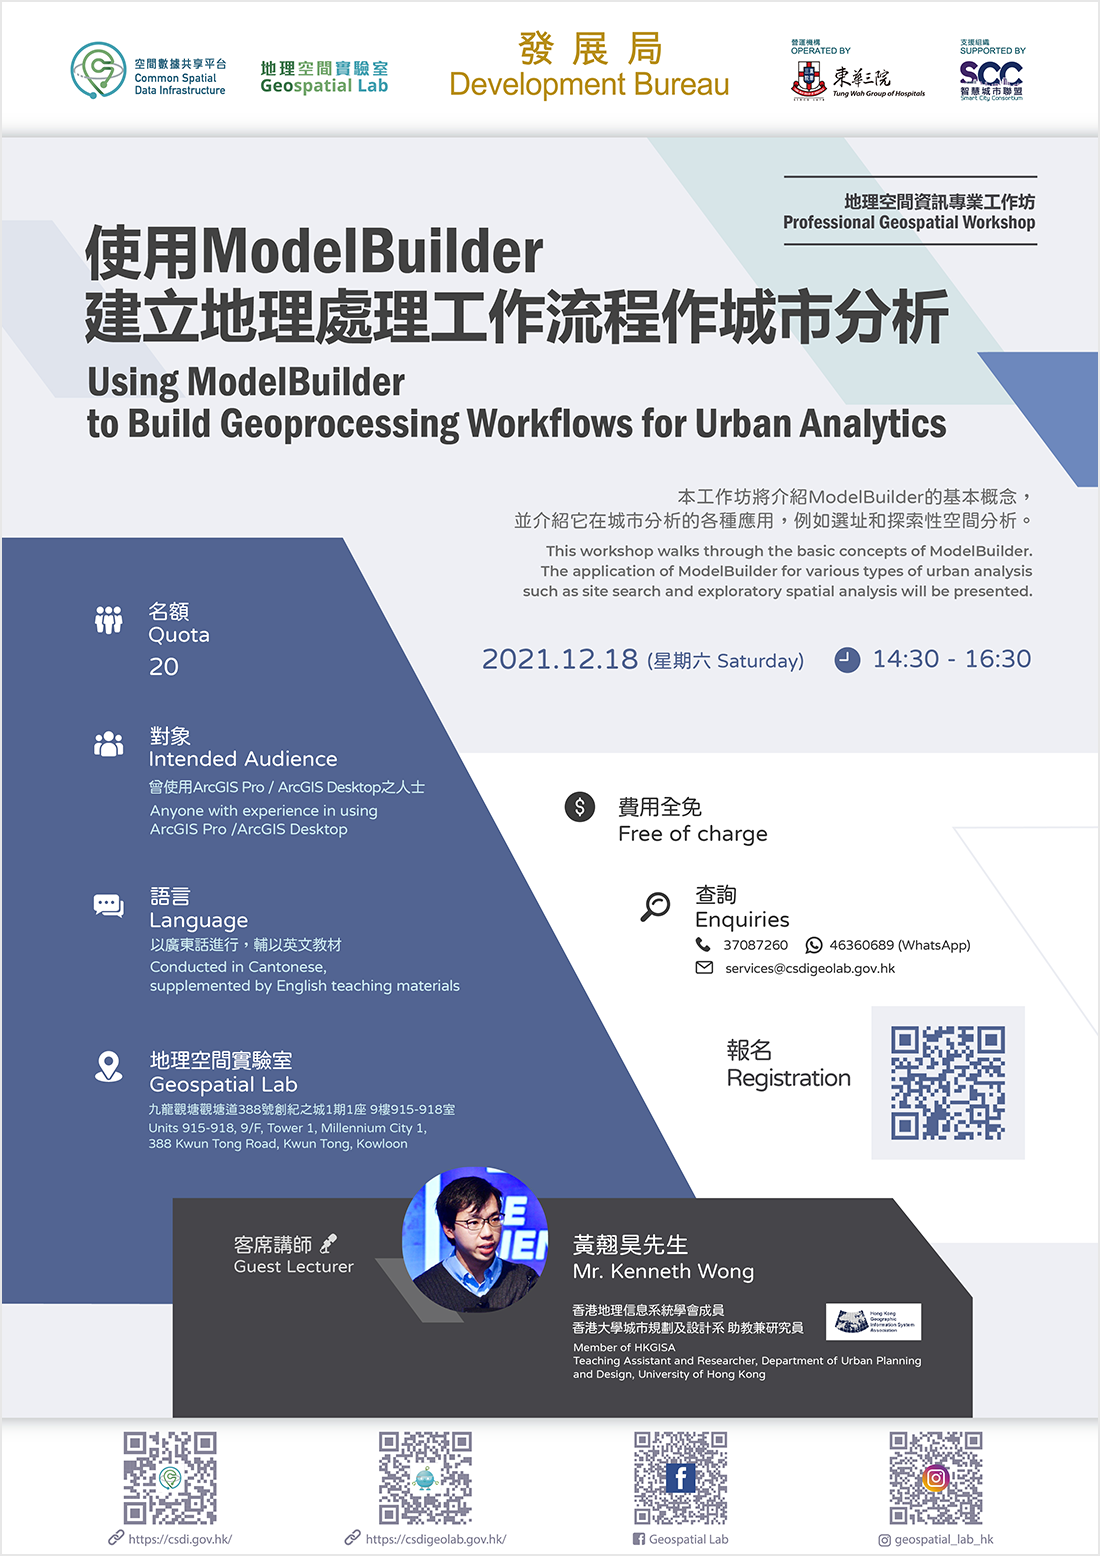 地理空间资讯专业工作坊 「使用ModelBuilder建立地理处理工作流程作城市分析」